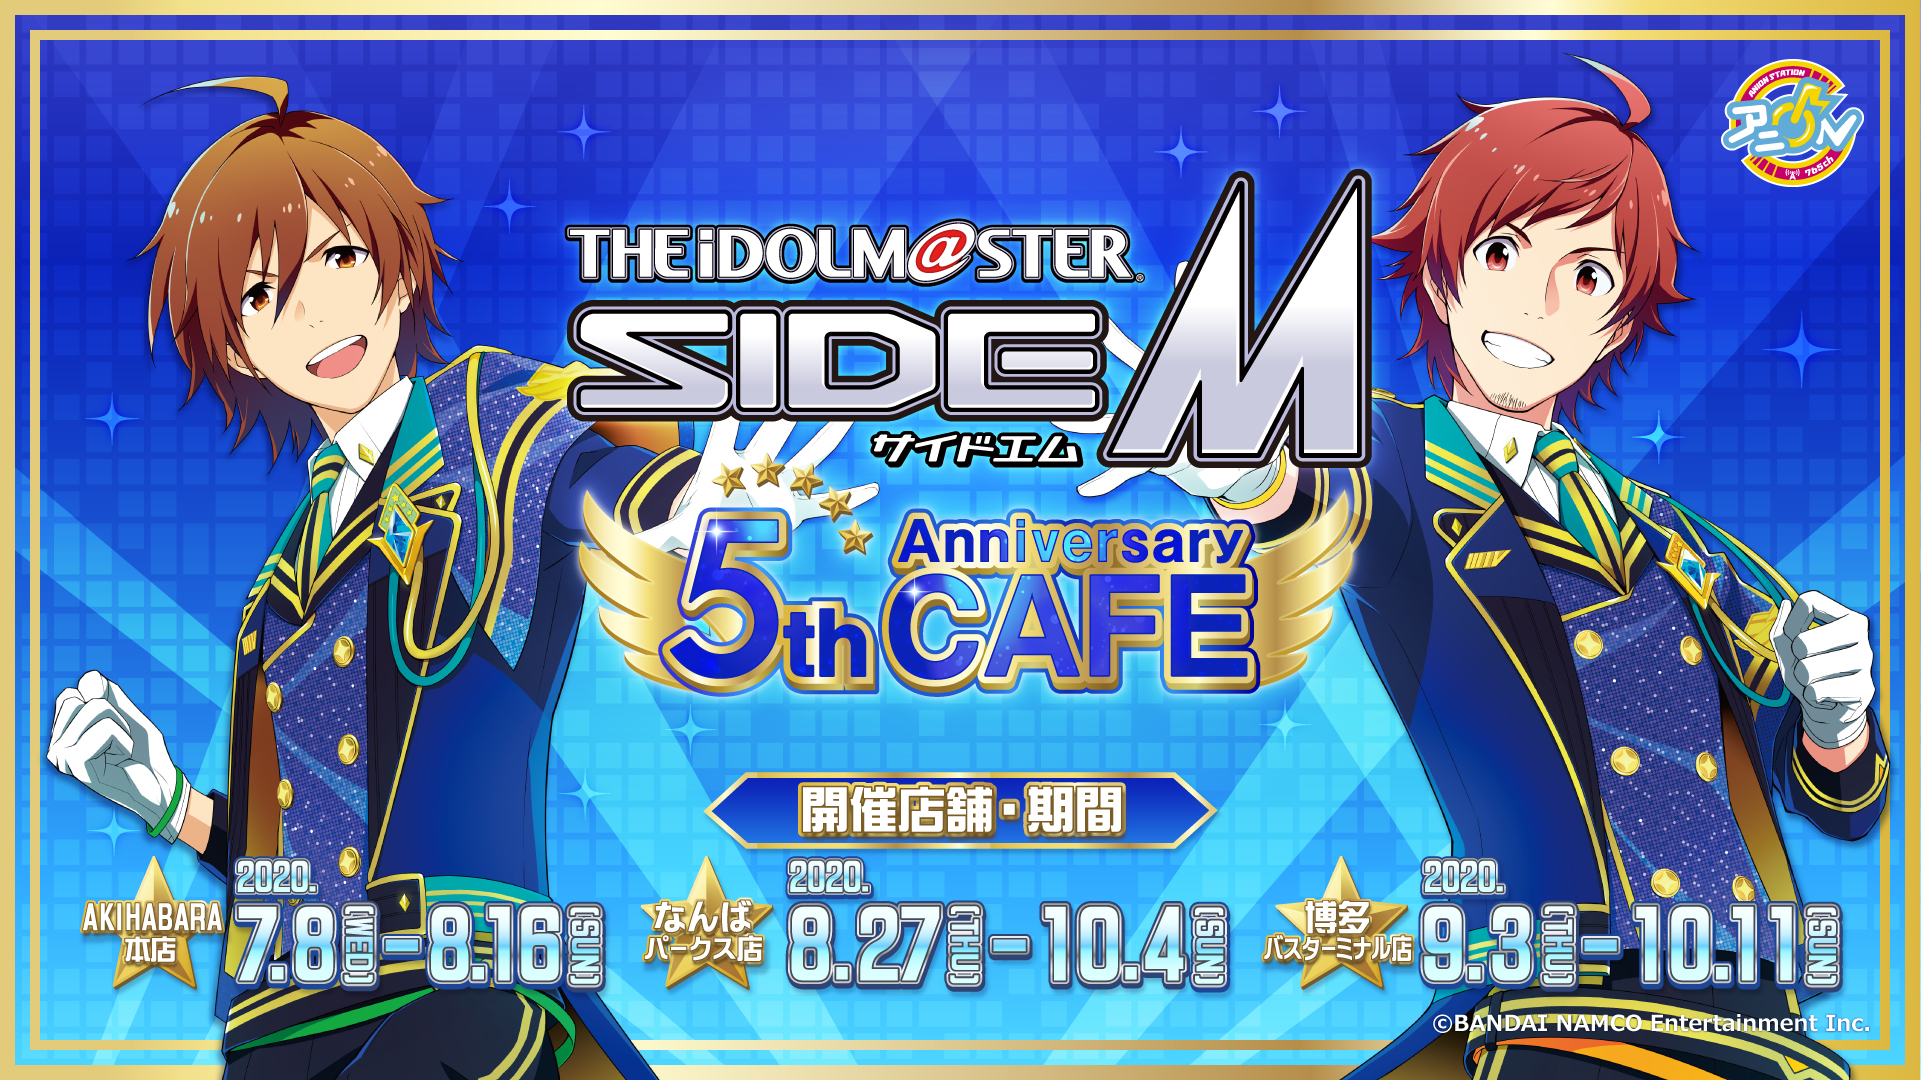 前期通常プラン Akihabara本店 アイドルマスター Sidem 5th Anniversary Cafeの開催スケジュール一覧 ライヴポケット